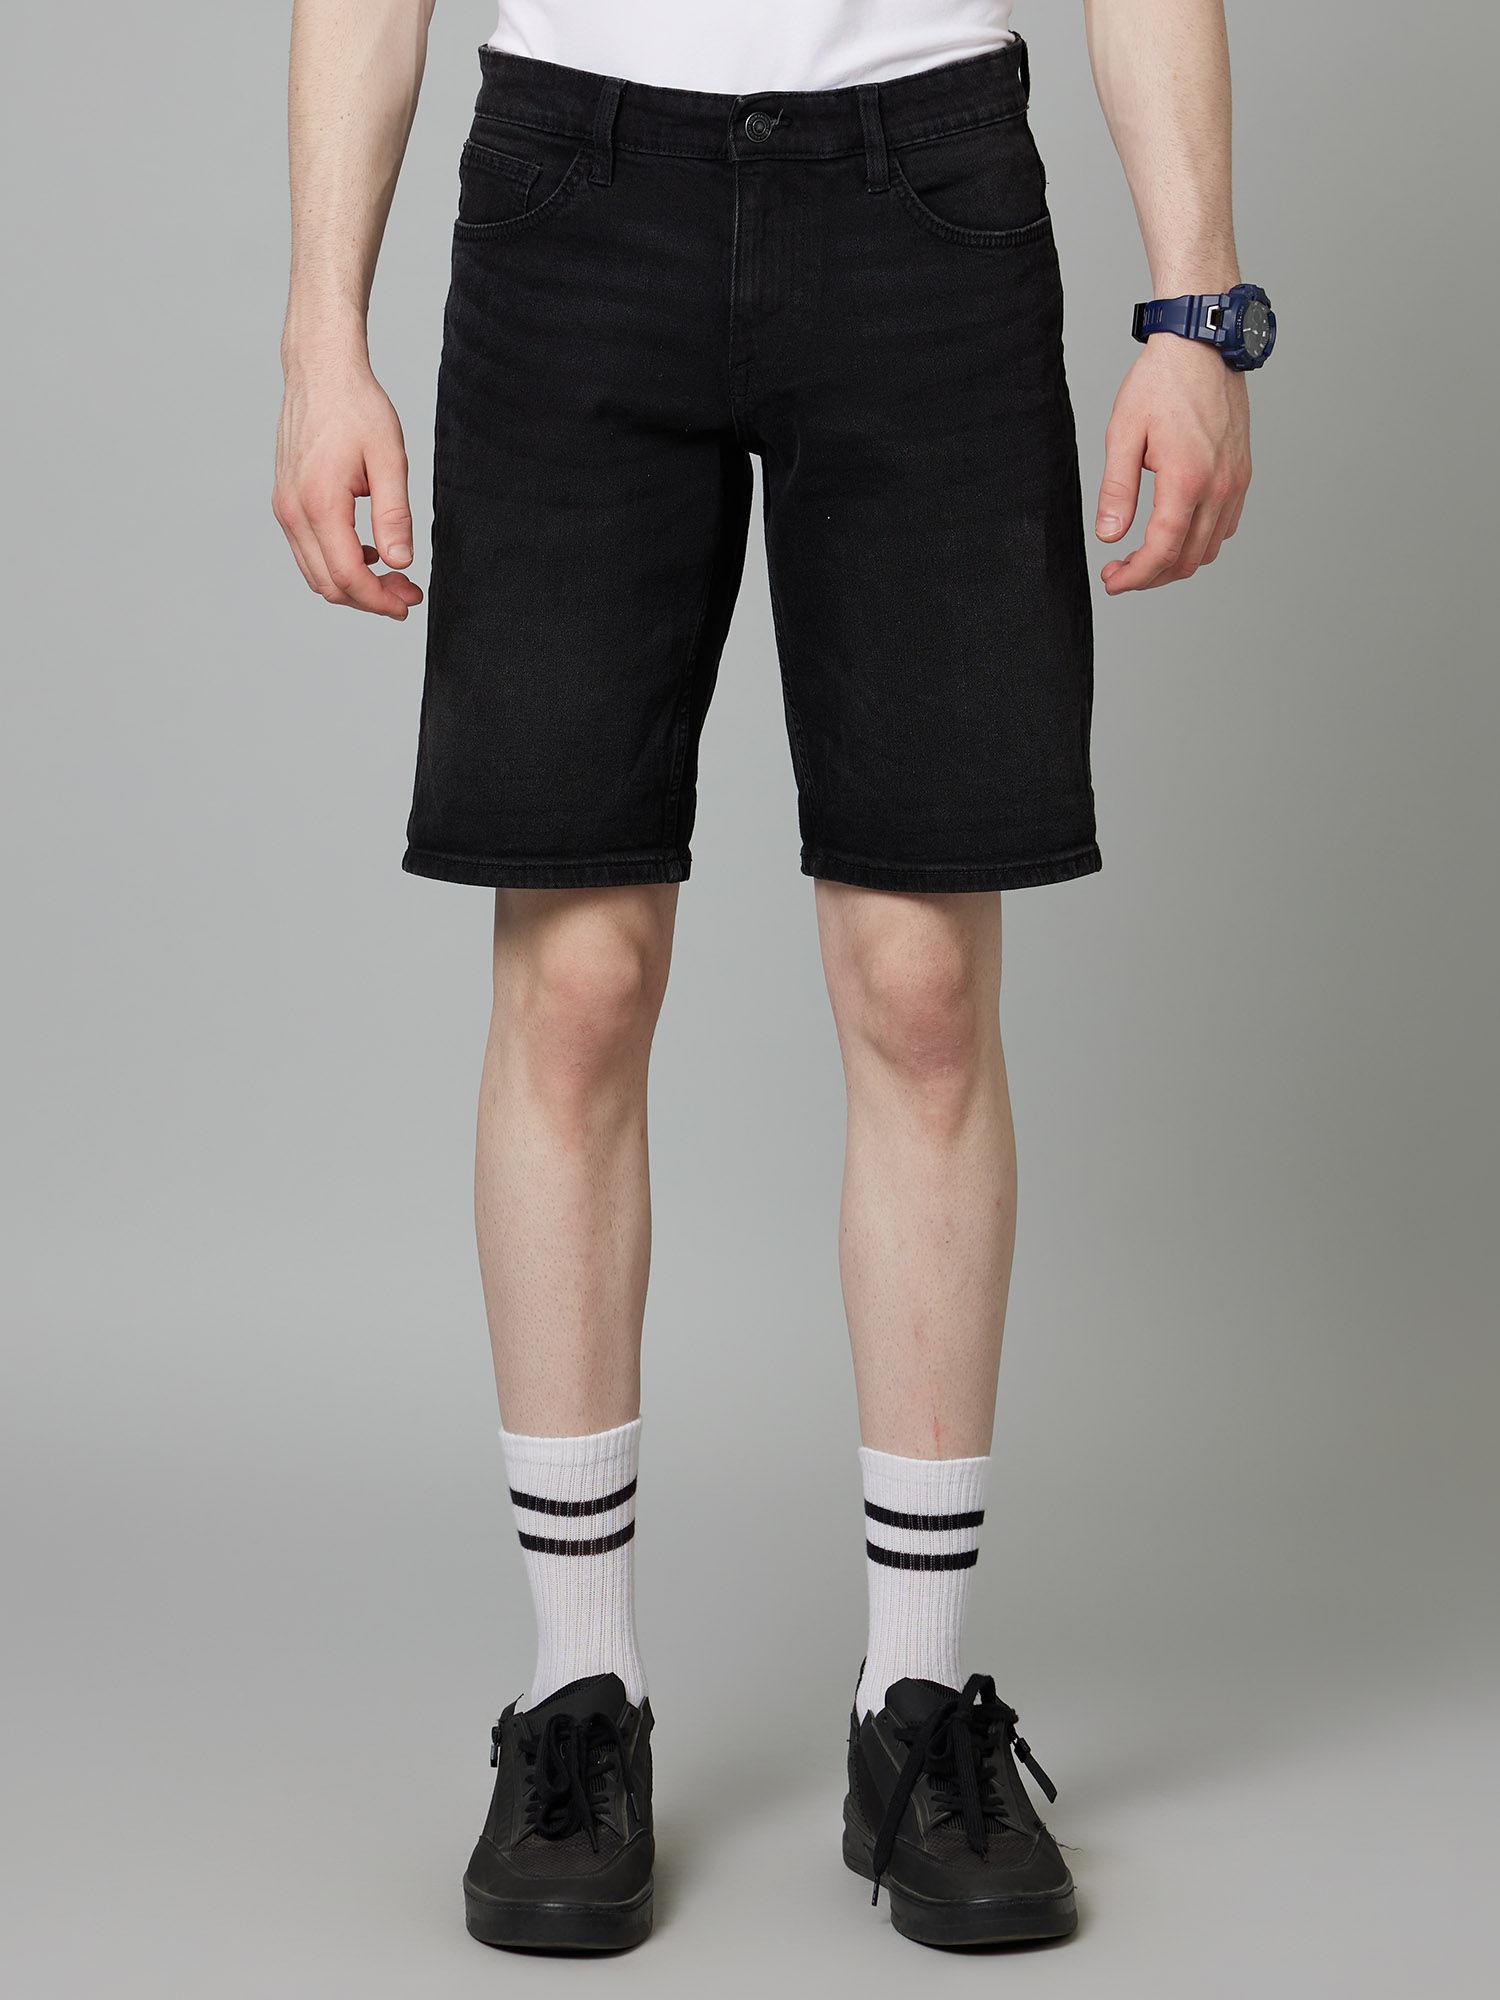 mens-black-denim-bermuda-shorts